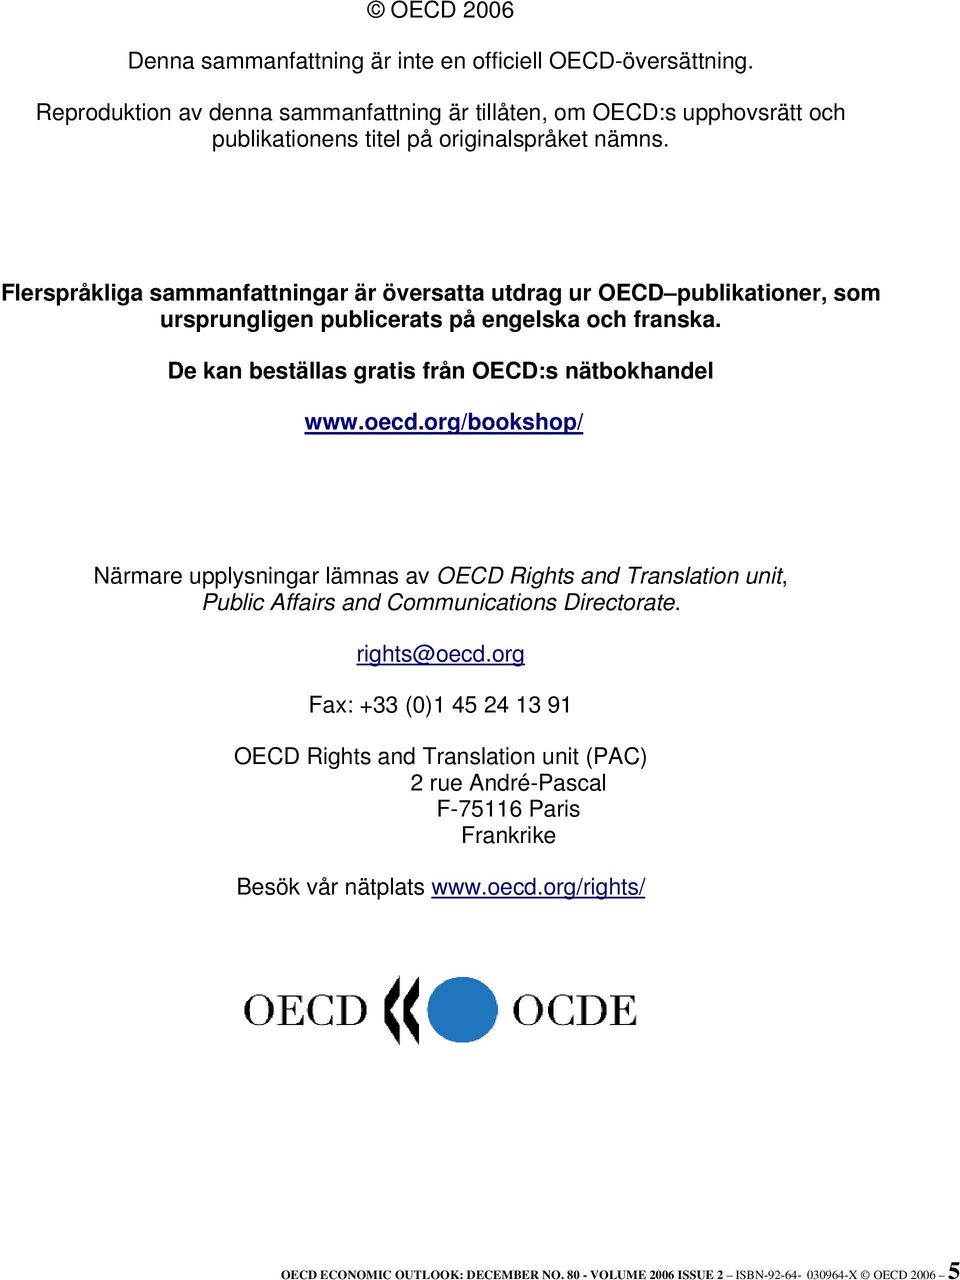 Flerspråkliga sammanfattningar är översatta utdrag ur OECD publikationer, som ursprungligen publicerats på engelska och franska. De kan beställas gratis från OECD:s nätbokhandel www.oecd.